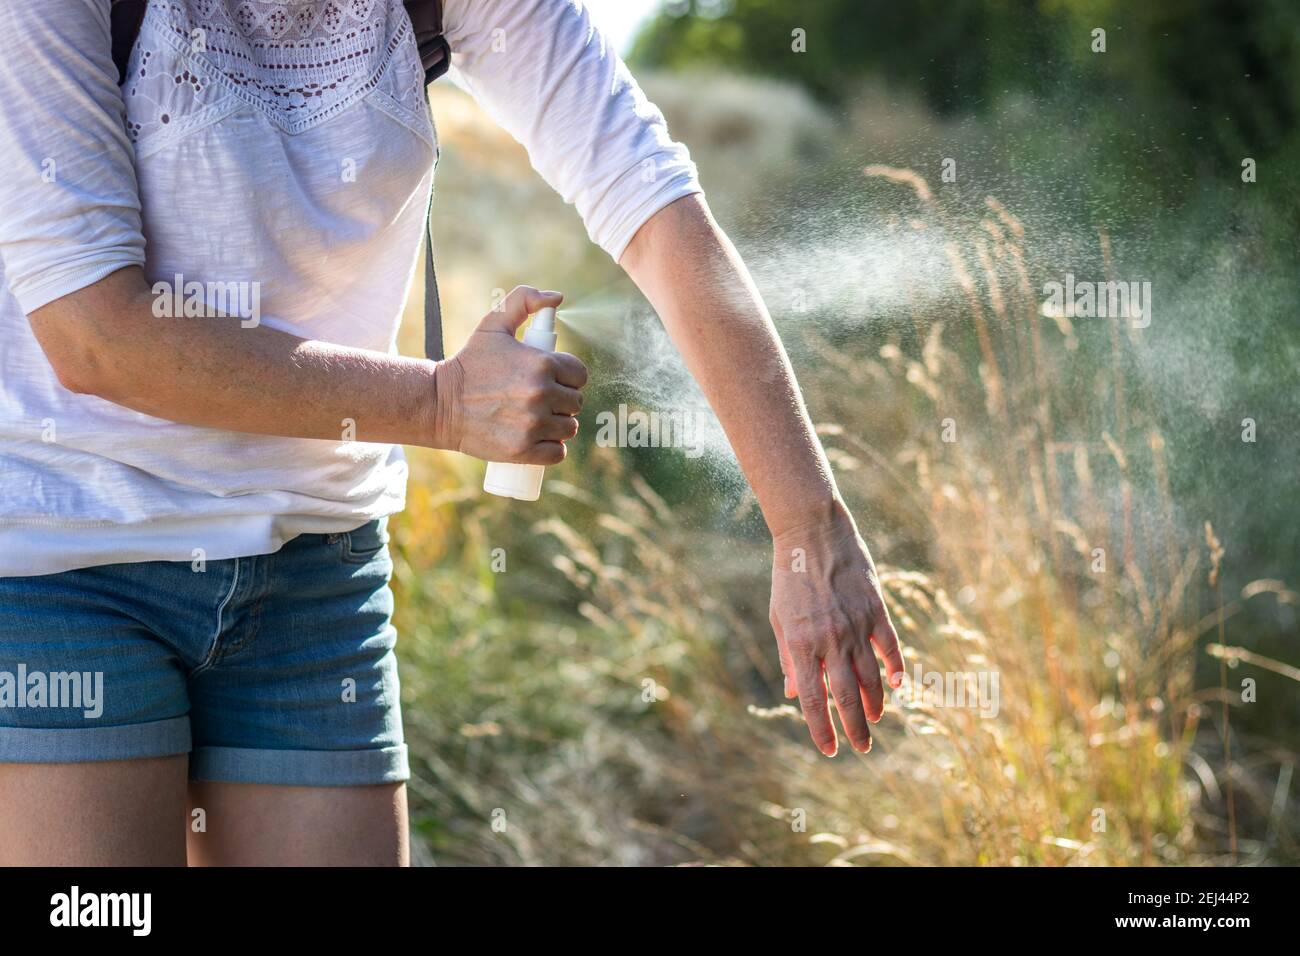 Repelente de insectos. Mujer aplicando repelente de mosquitos en la mano en la naturaleza. Protección de la piel contra garrapatas y otros insectos Foto de stock